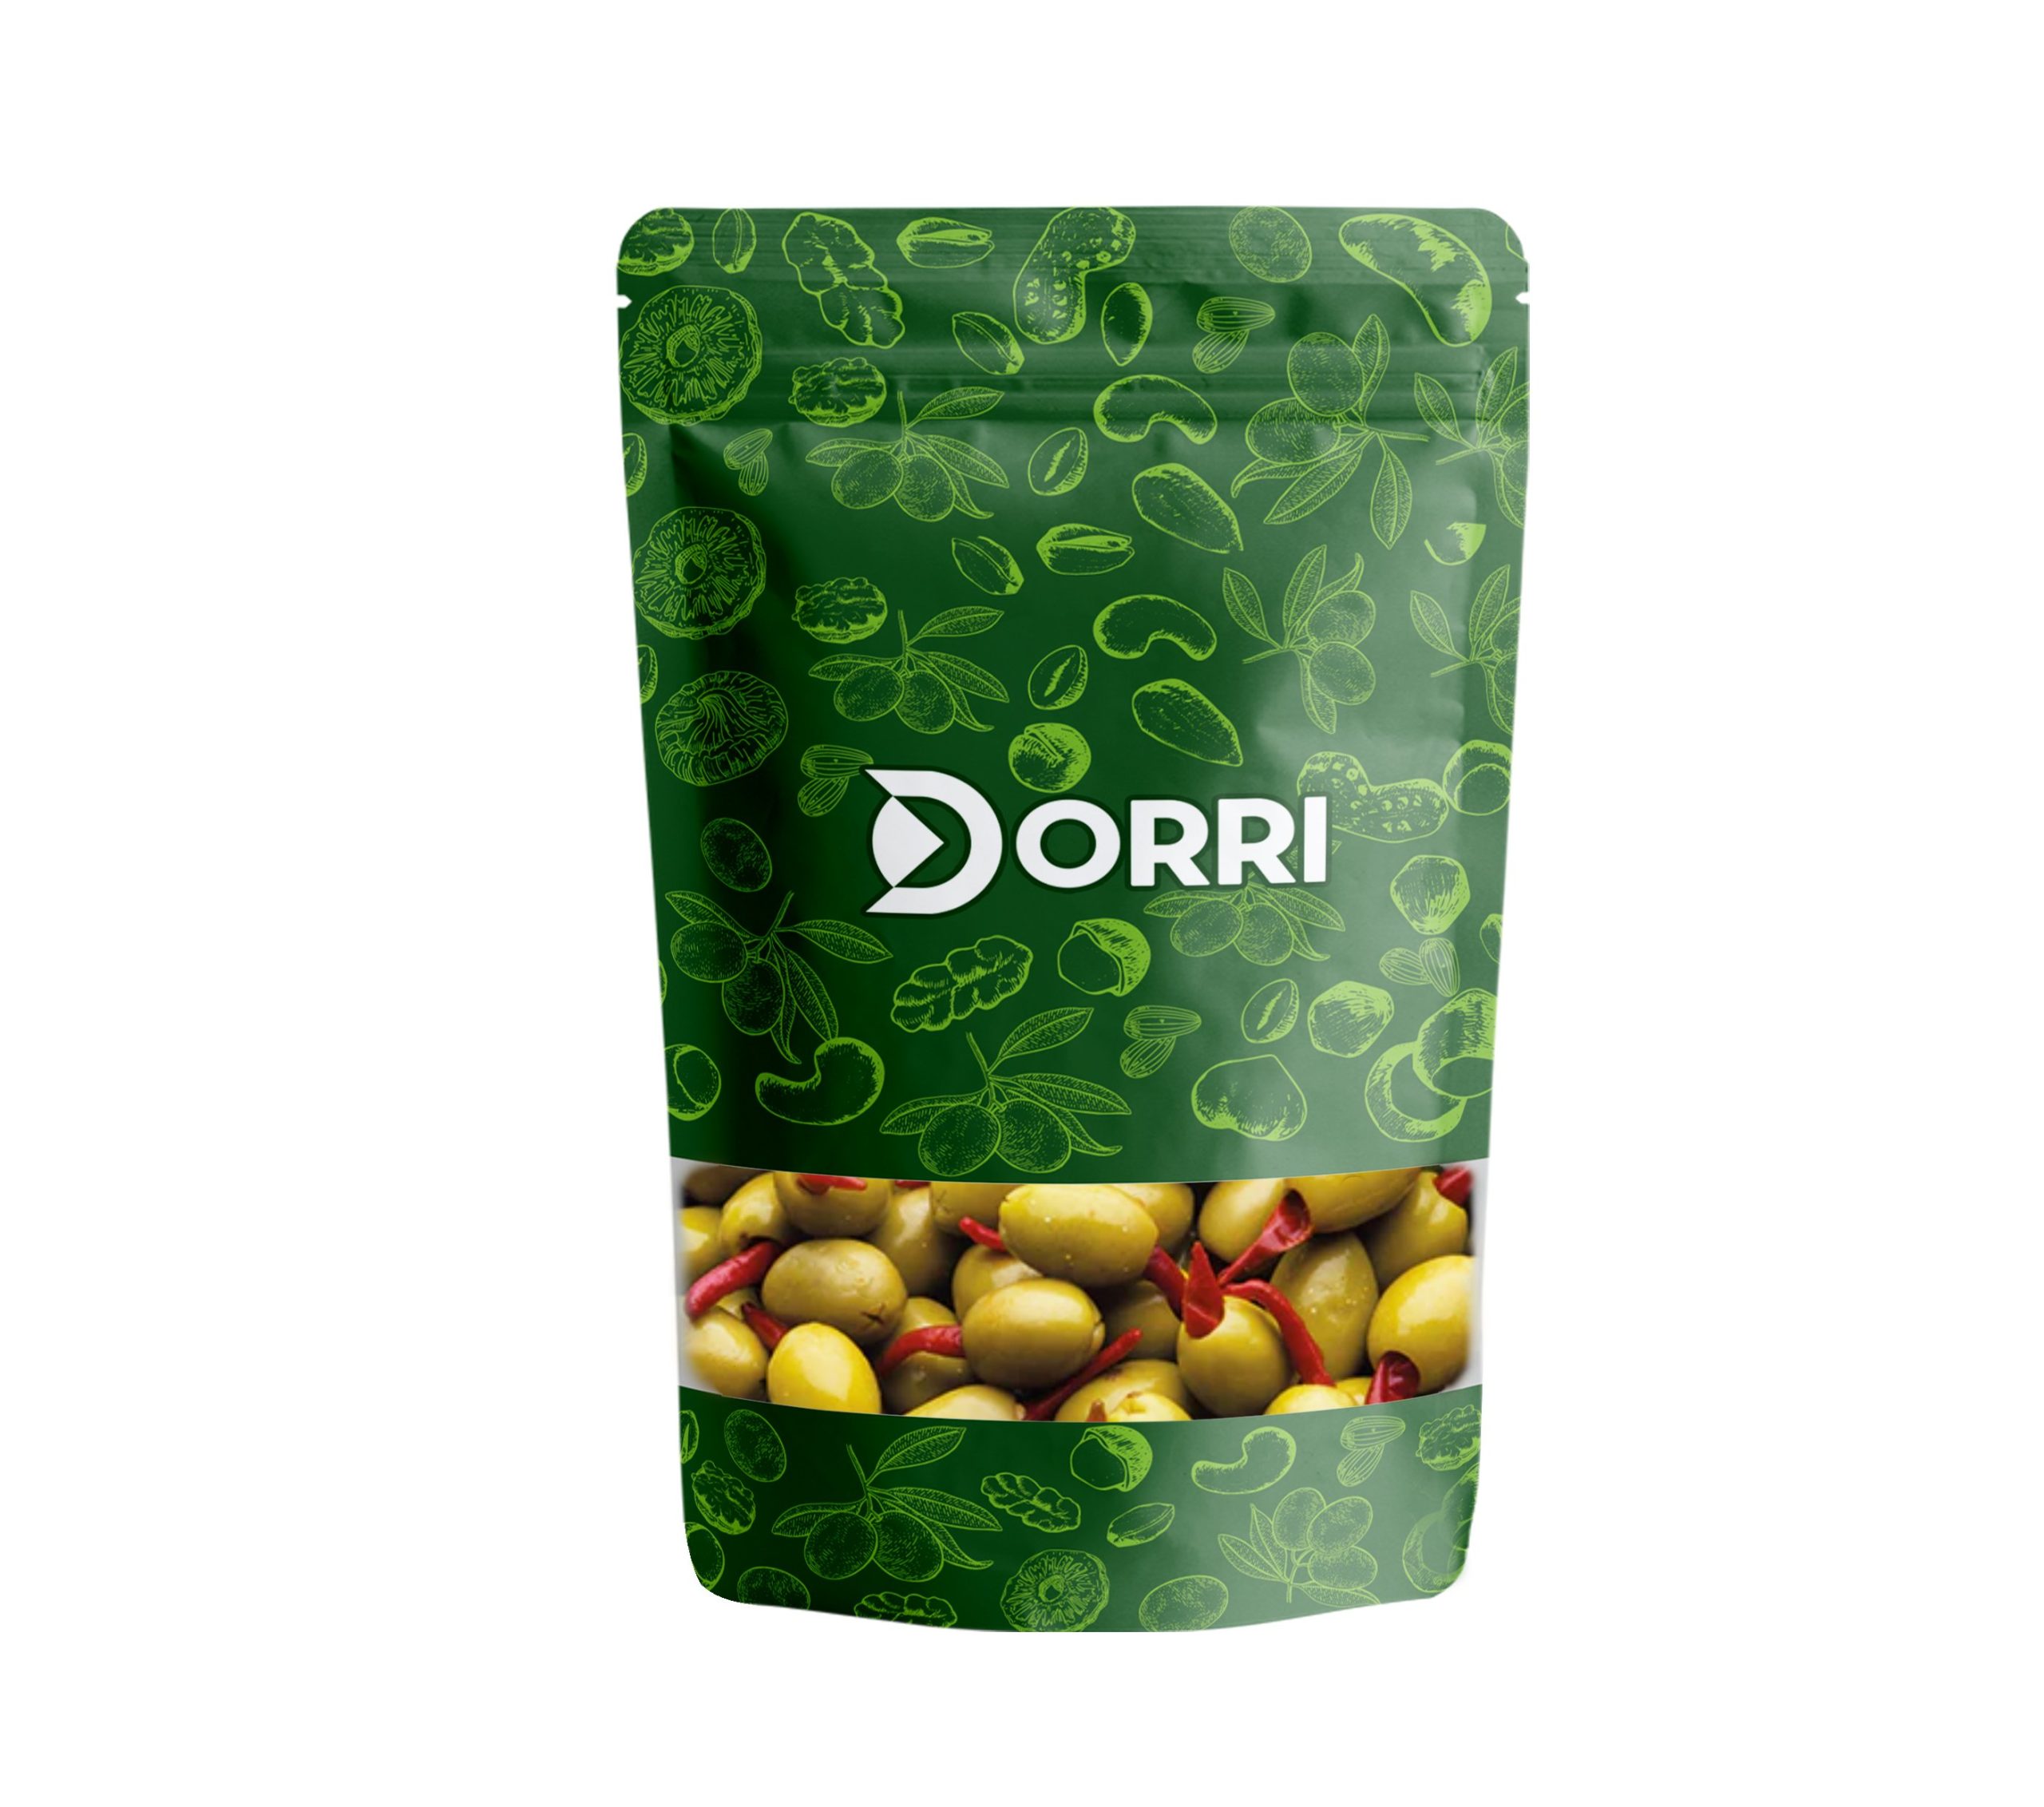 Dorri - Olives Stuffed Piri Piri in Brine